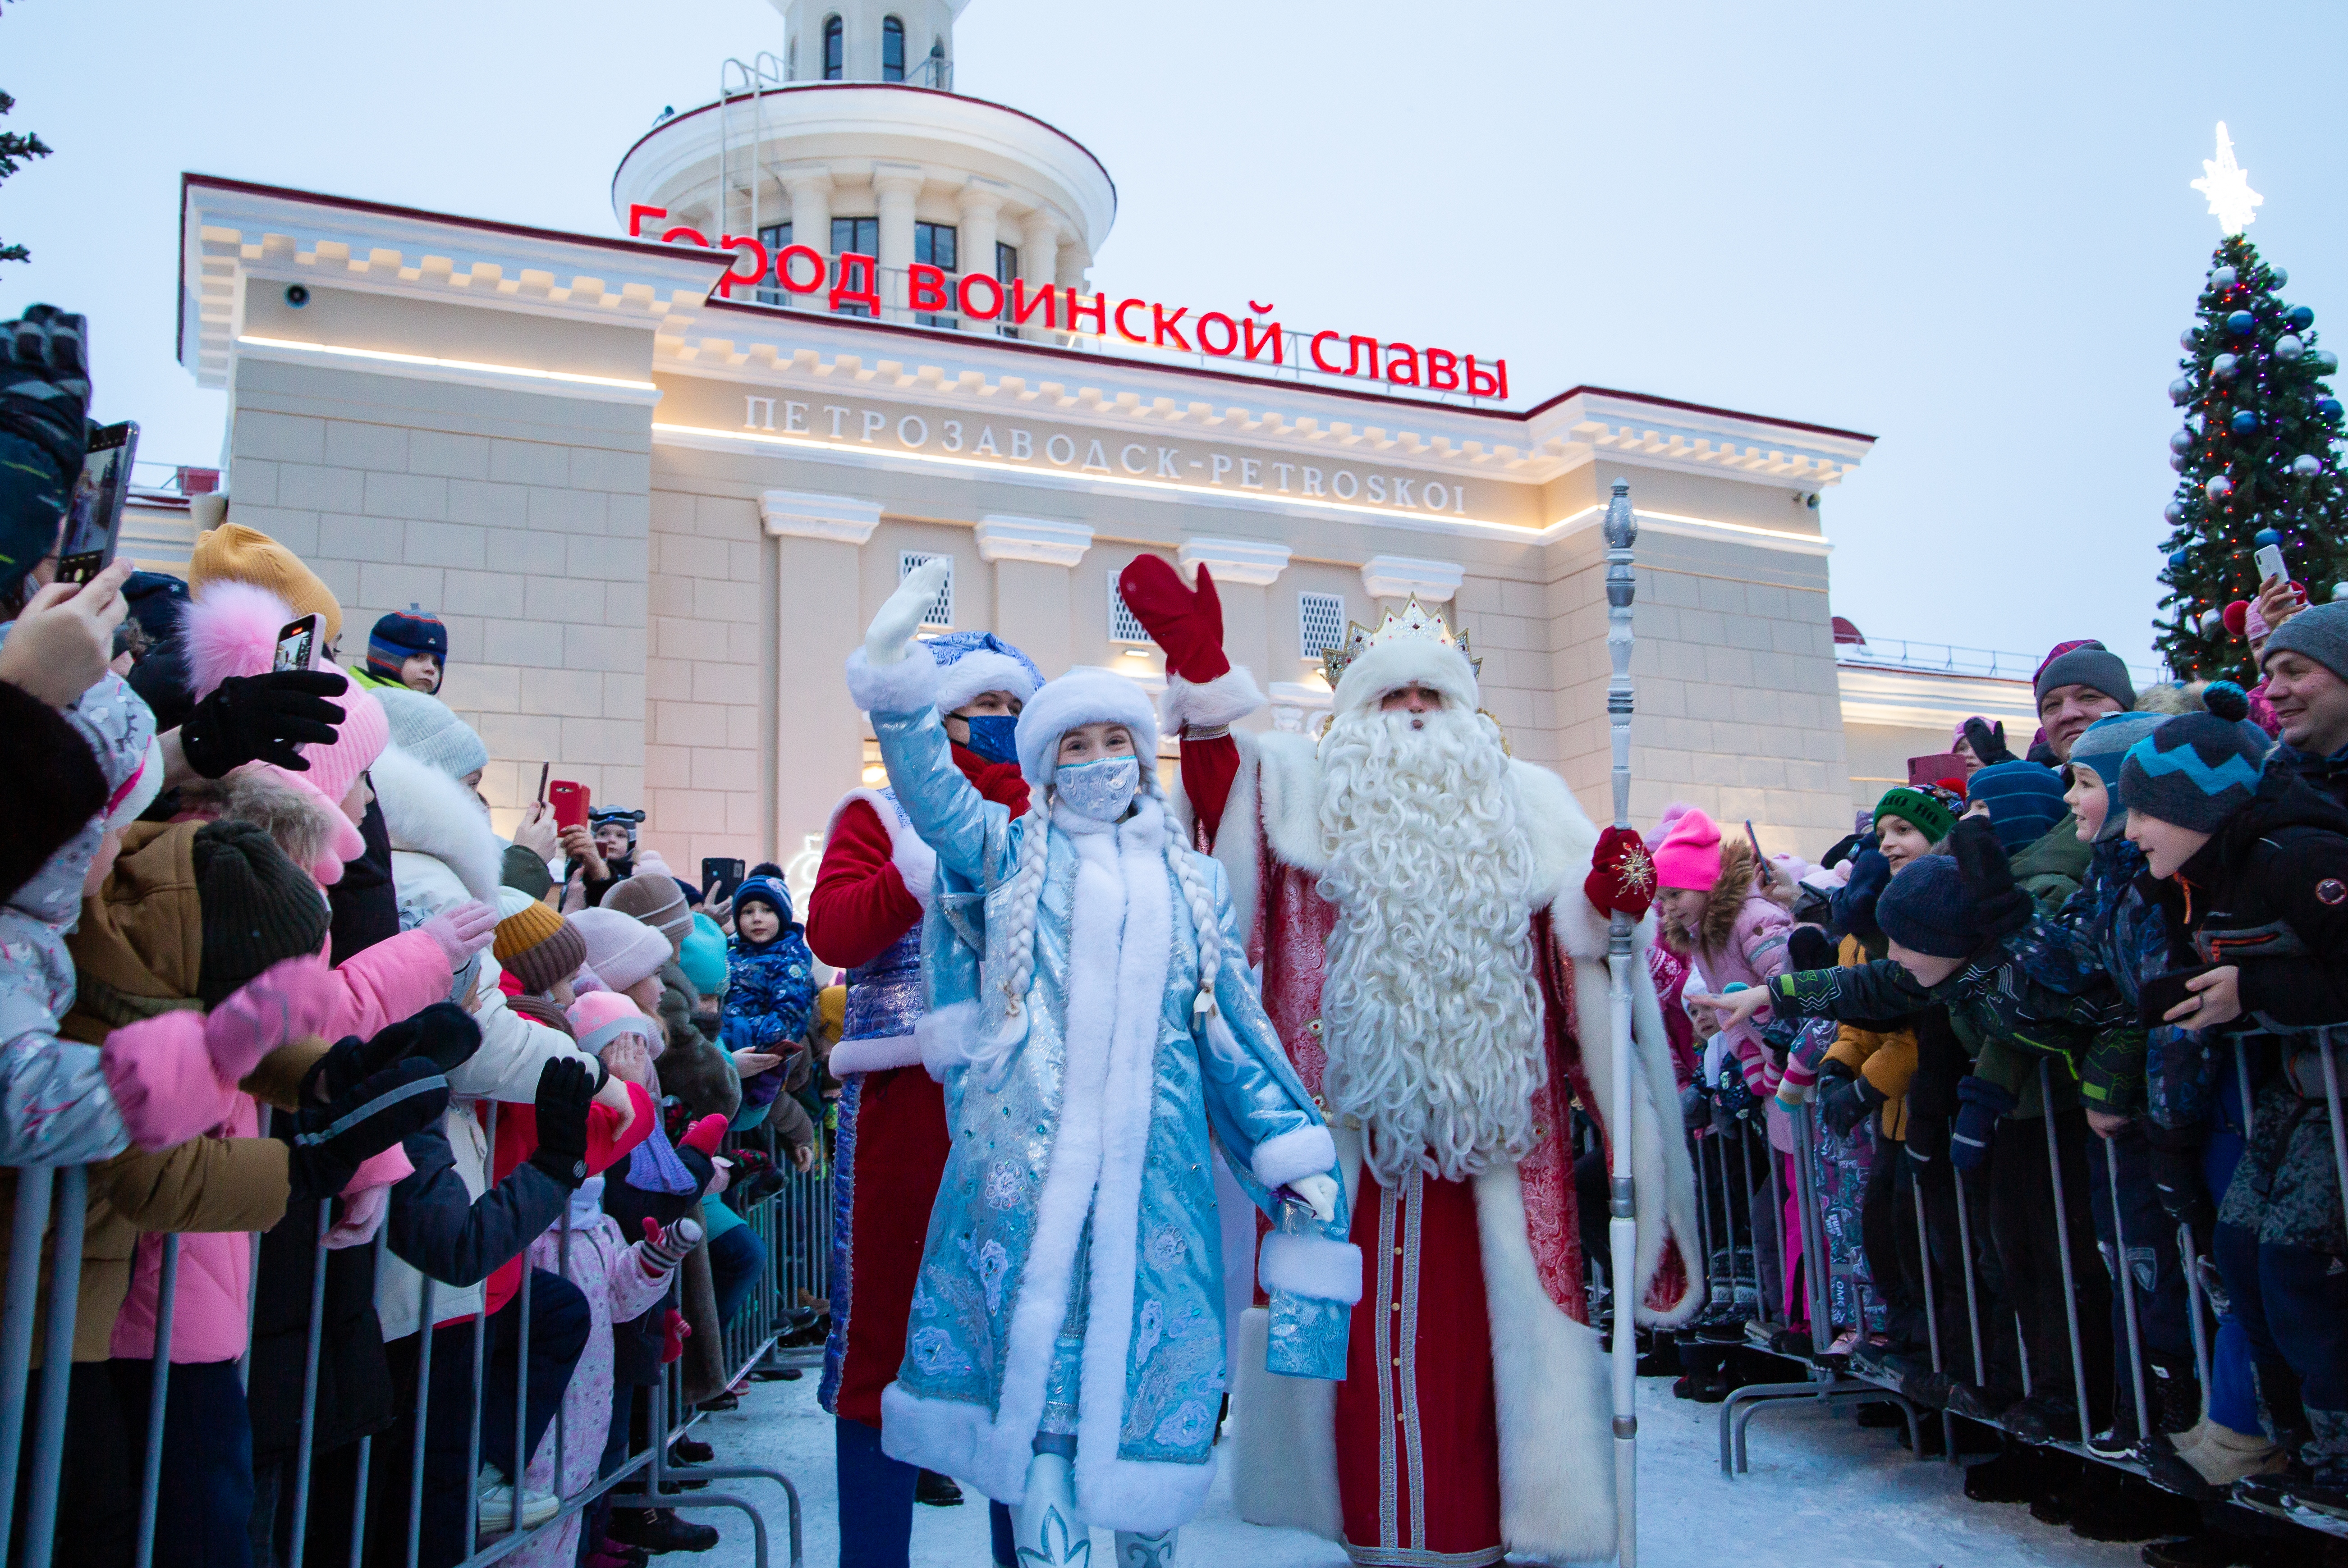 Прибывший на собственном поезде Дед Мороз устроил праздник на ж/д вокзале Петрозаводска (ФОТО)